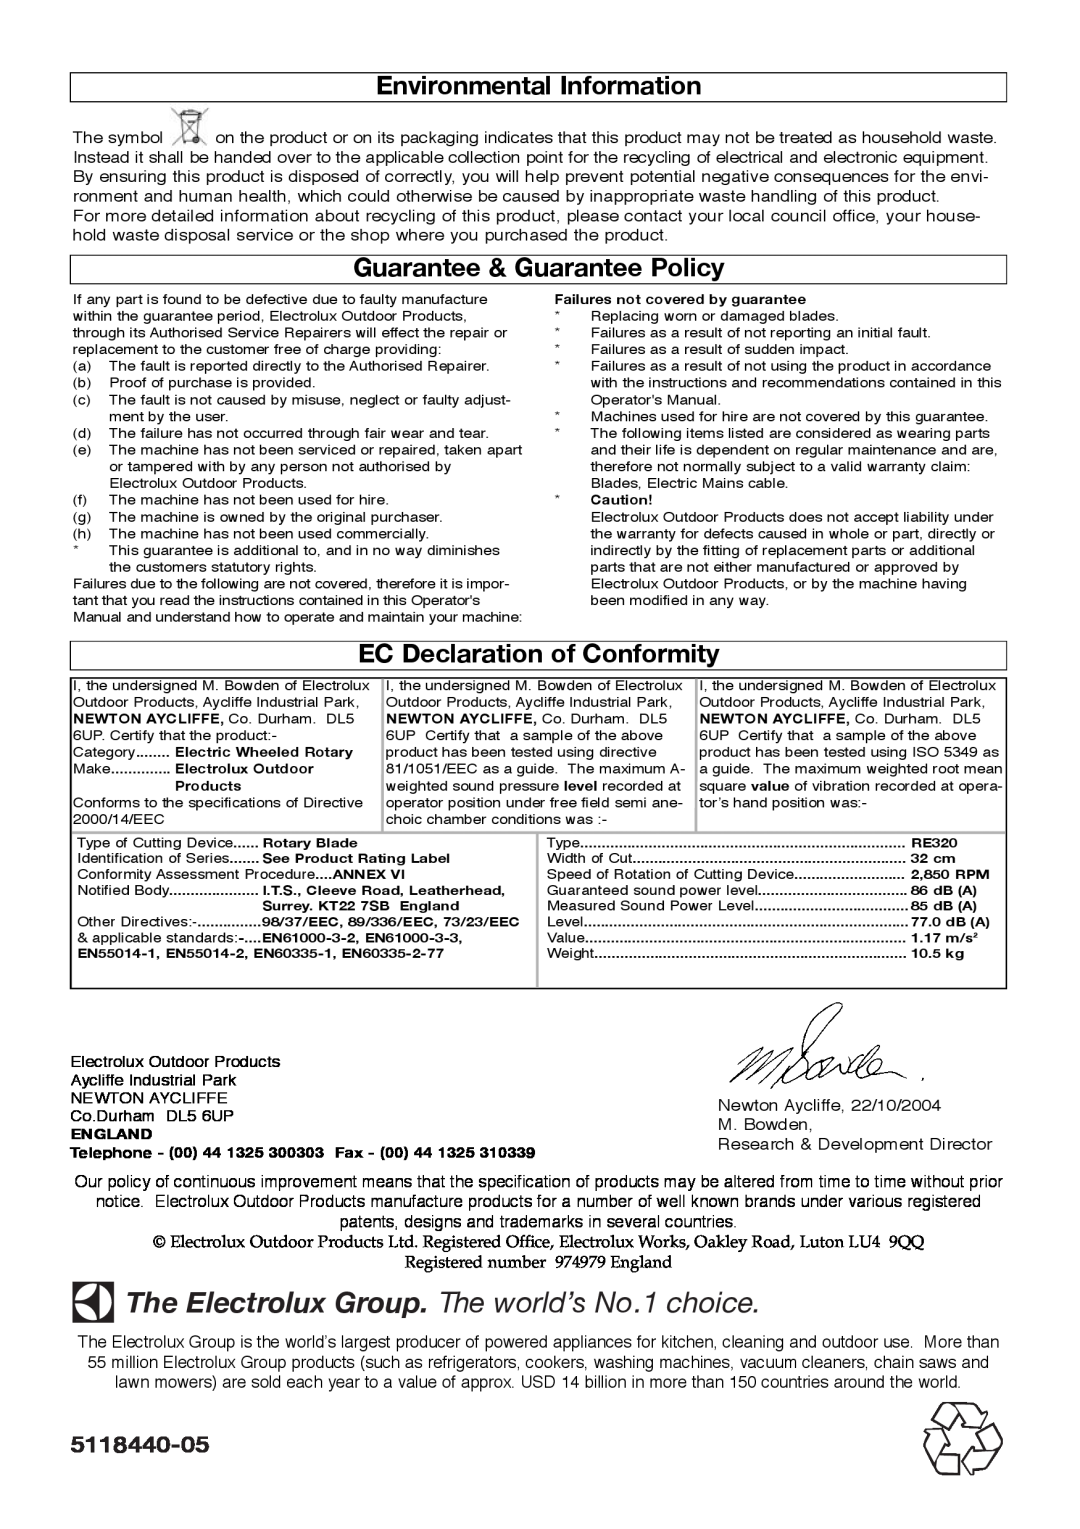 Flymo 320 manual Environmental Information, Guarantee & Guarantee Policy, EC Declaration of Conformity, 5118440-05 